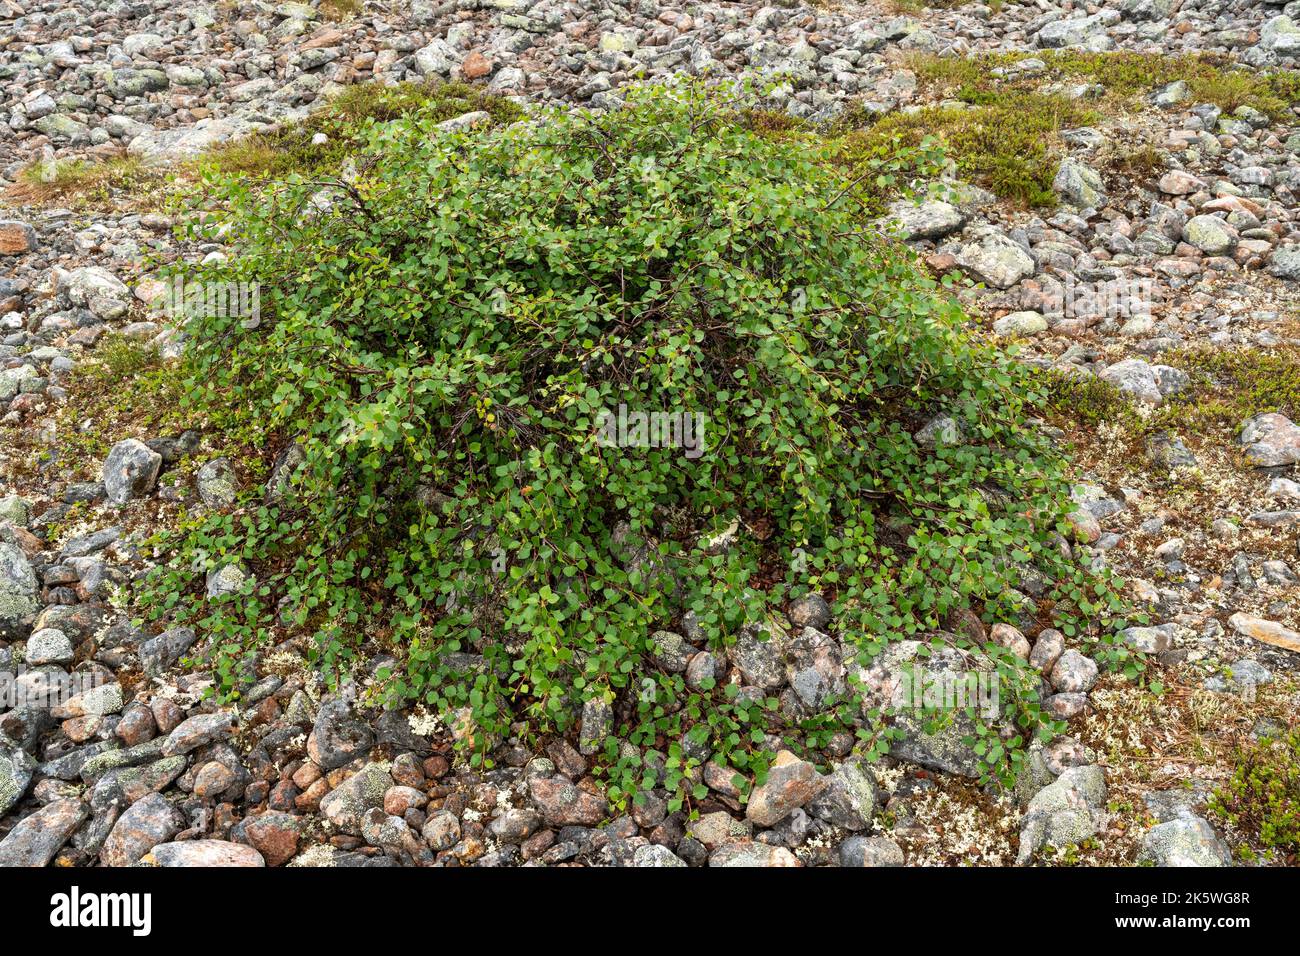 Eine niedrig wachsende Form einer Fell-Birke namens Kiilopää-Birke (Betula pubescens ssp. Czerepanovii var. Appressa), die auf einer felsigen Oberfläche in Finnland wachsen Stockfoto